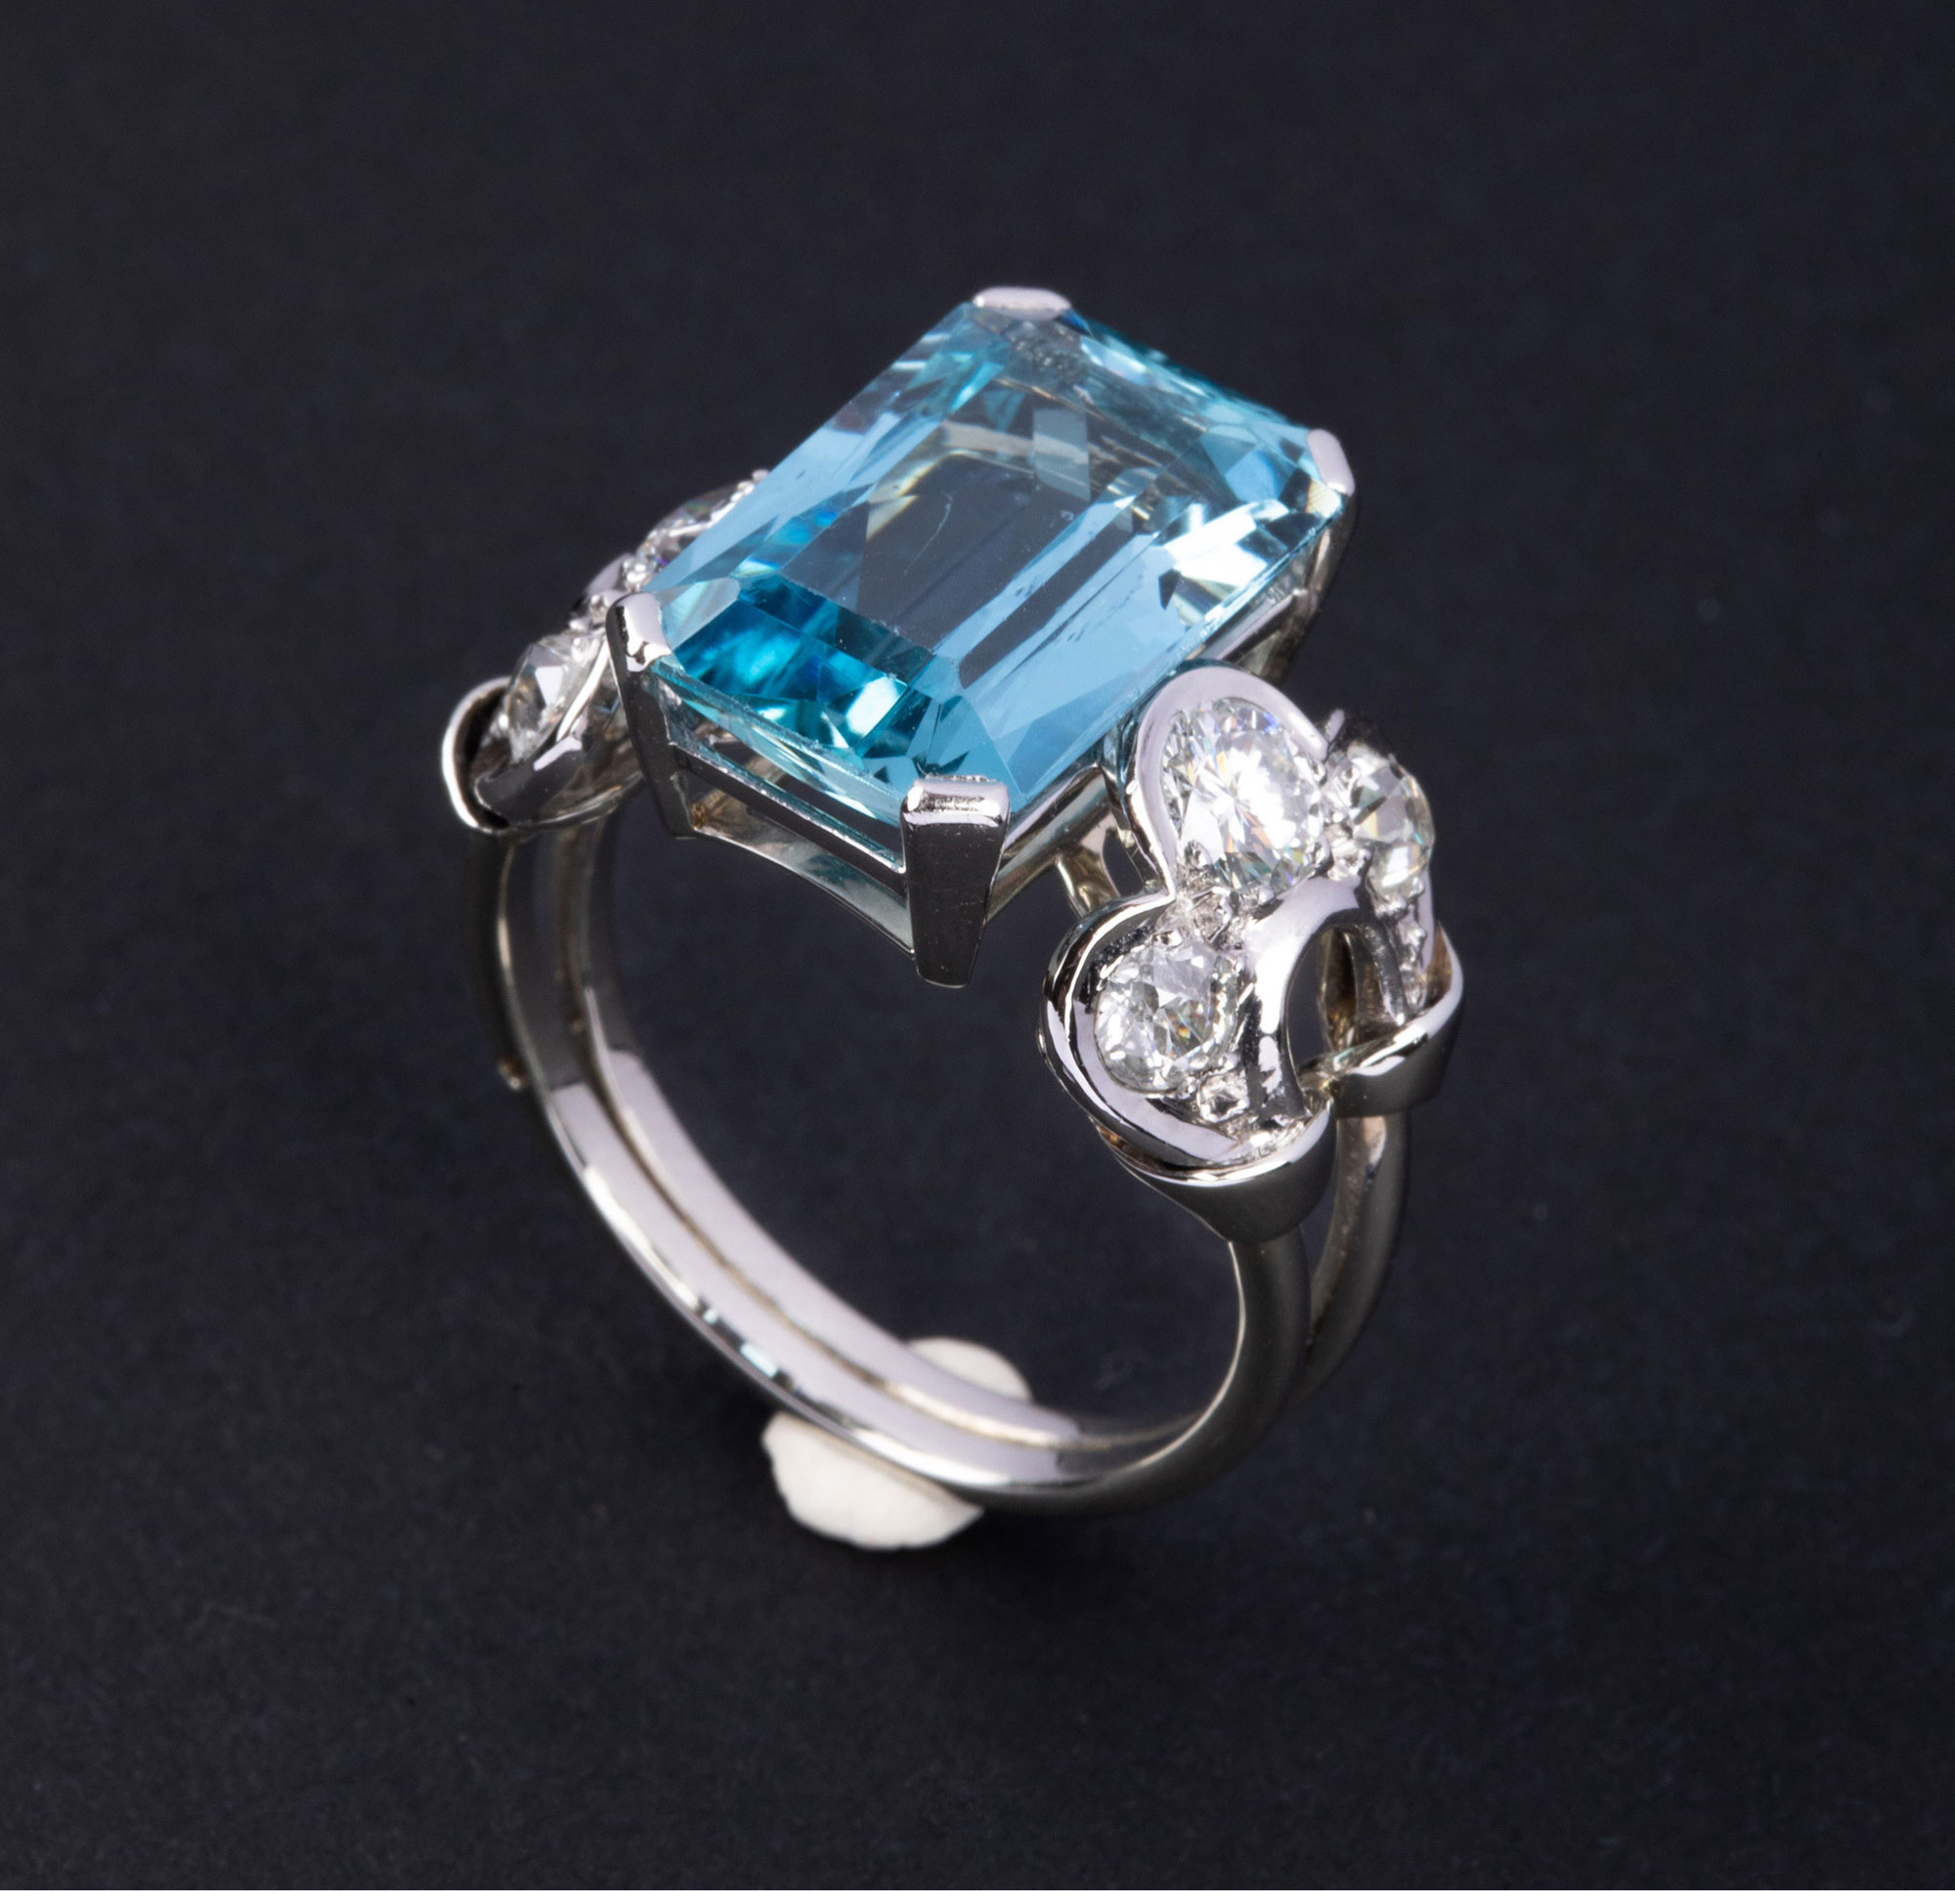 独角鹿西洋古董1950年代法国出品装饰艺术风格铂金镶嵌钻石及海蓝宝石戒指